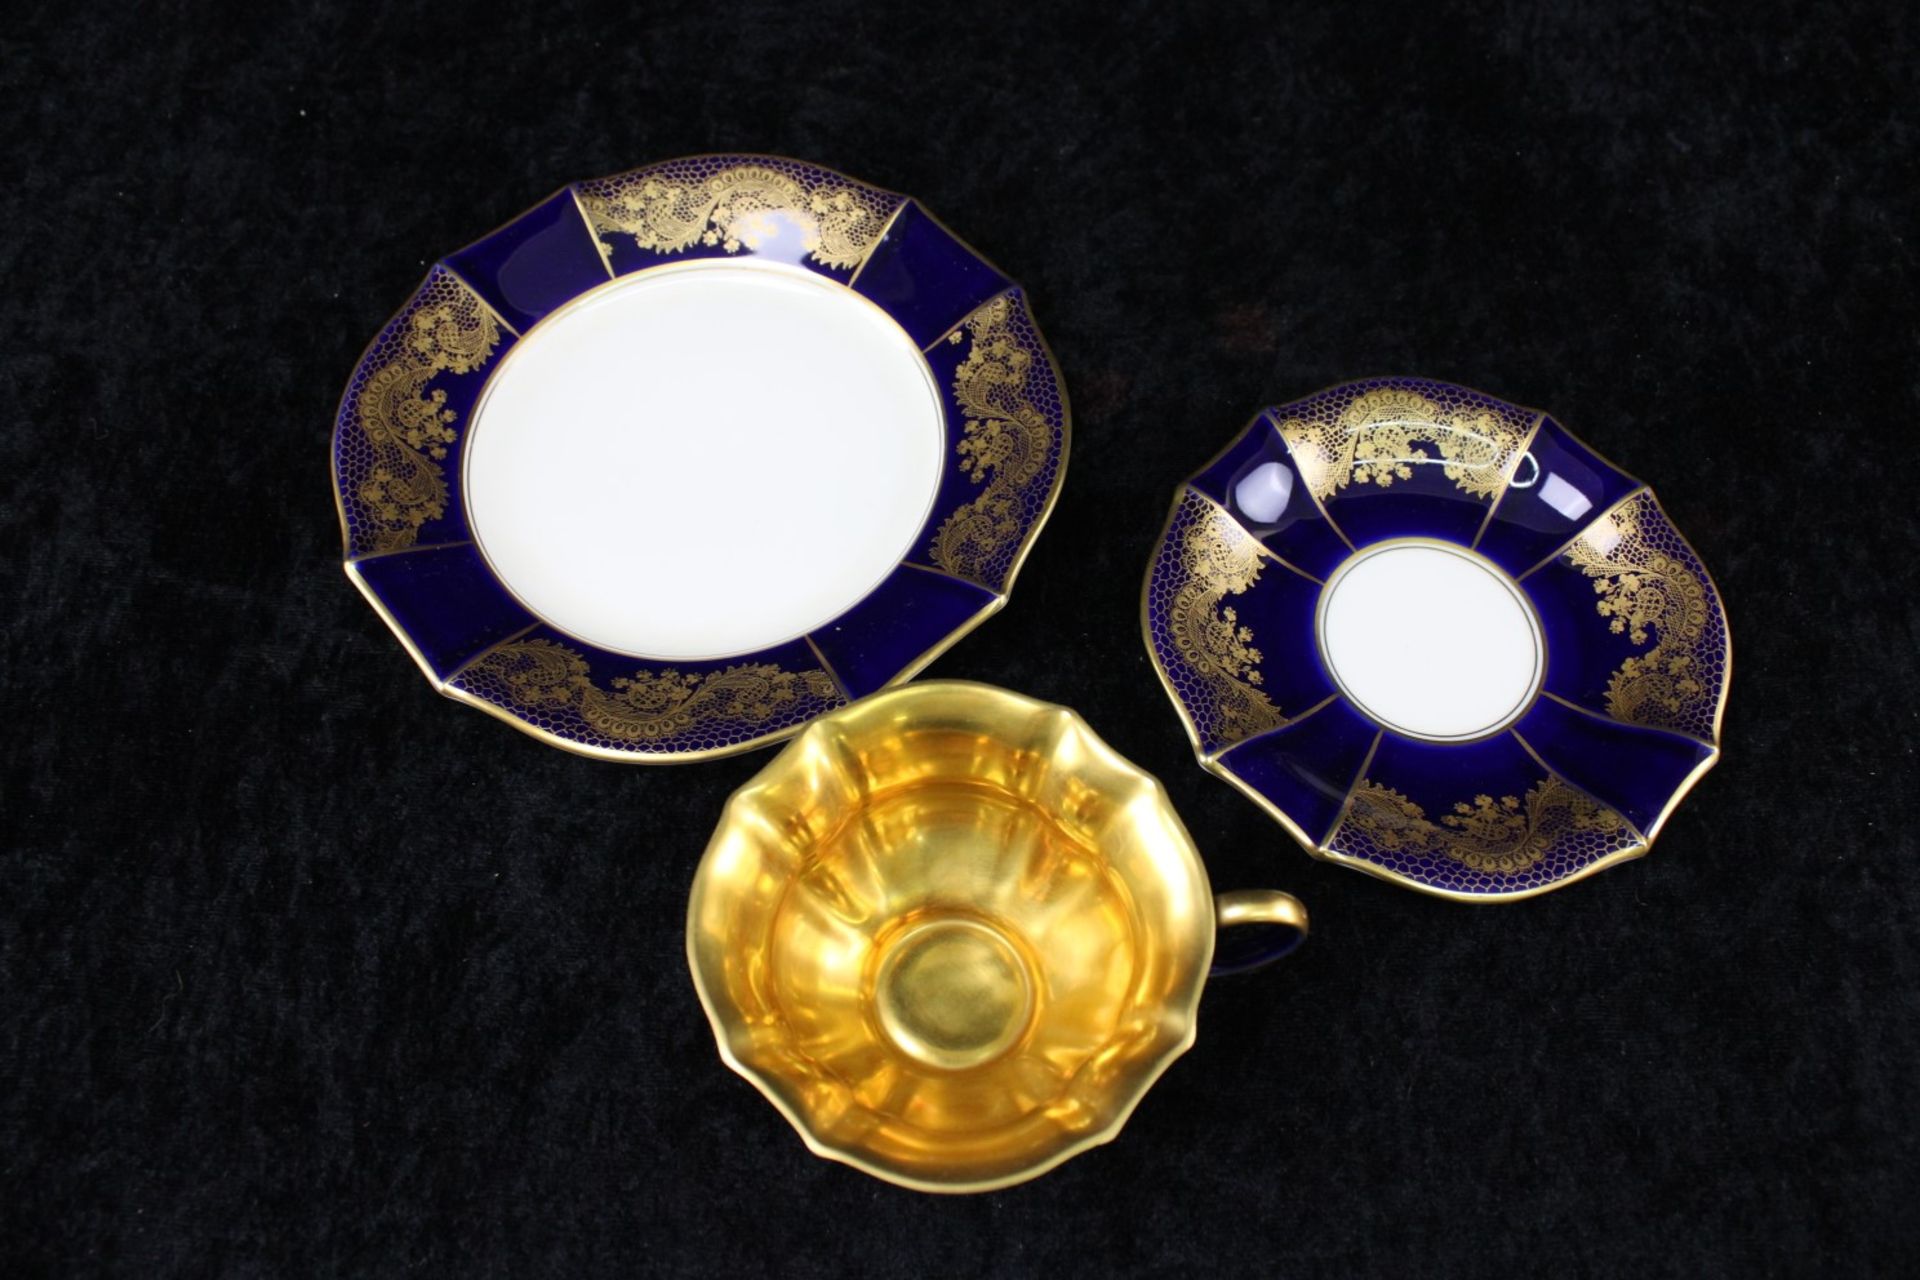 Sammelgedeck Porzellanmanufaktur Lindner, Cobalt Blau, Golddekor, Tasse innen vergoldet - Image 2 of 3